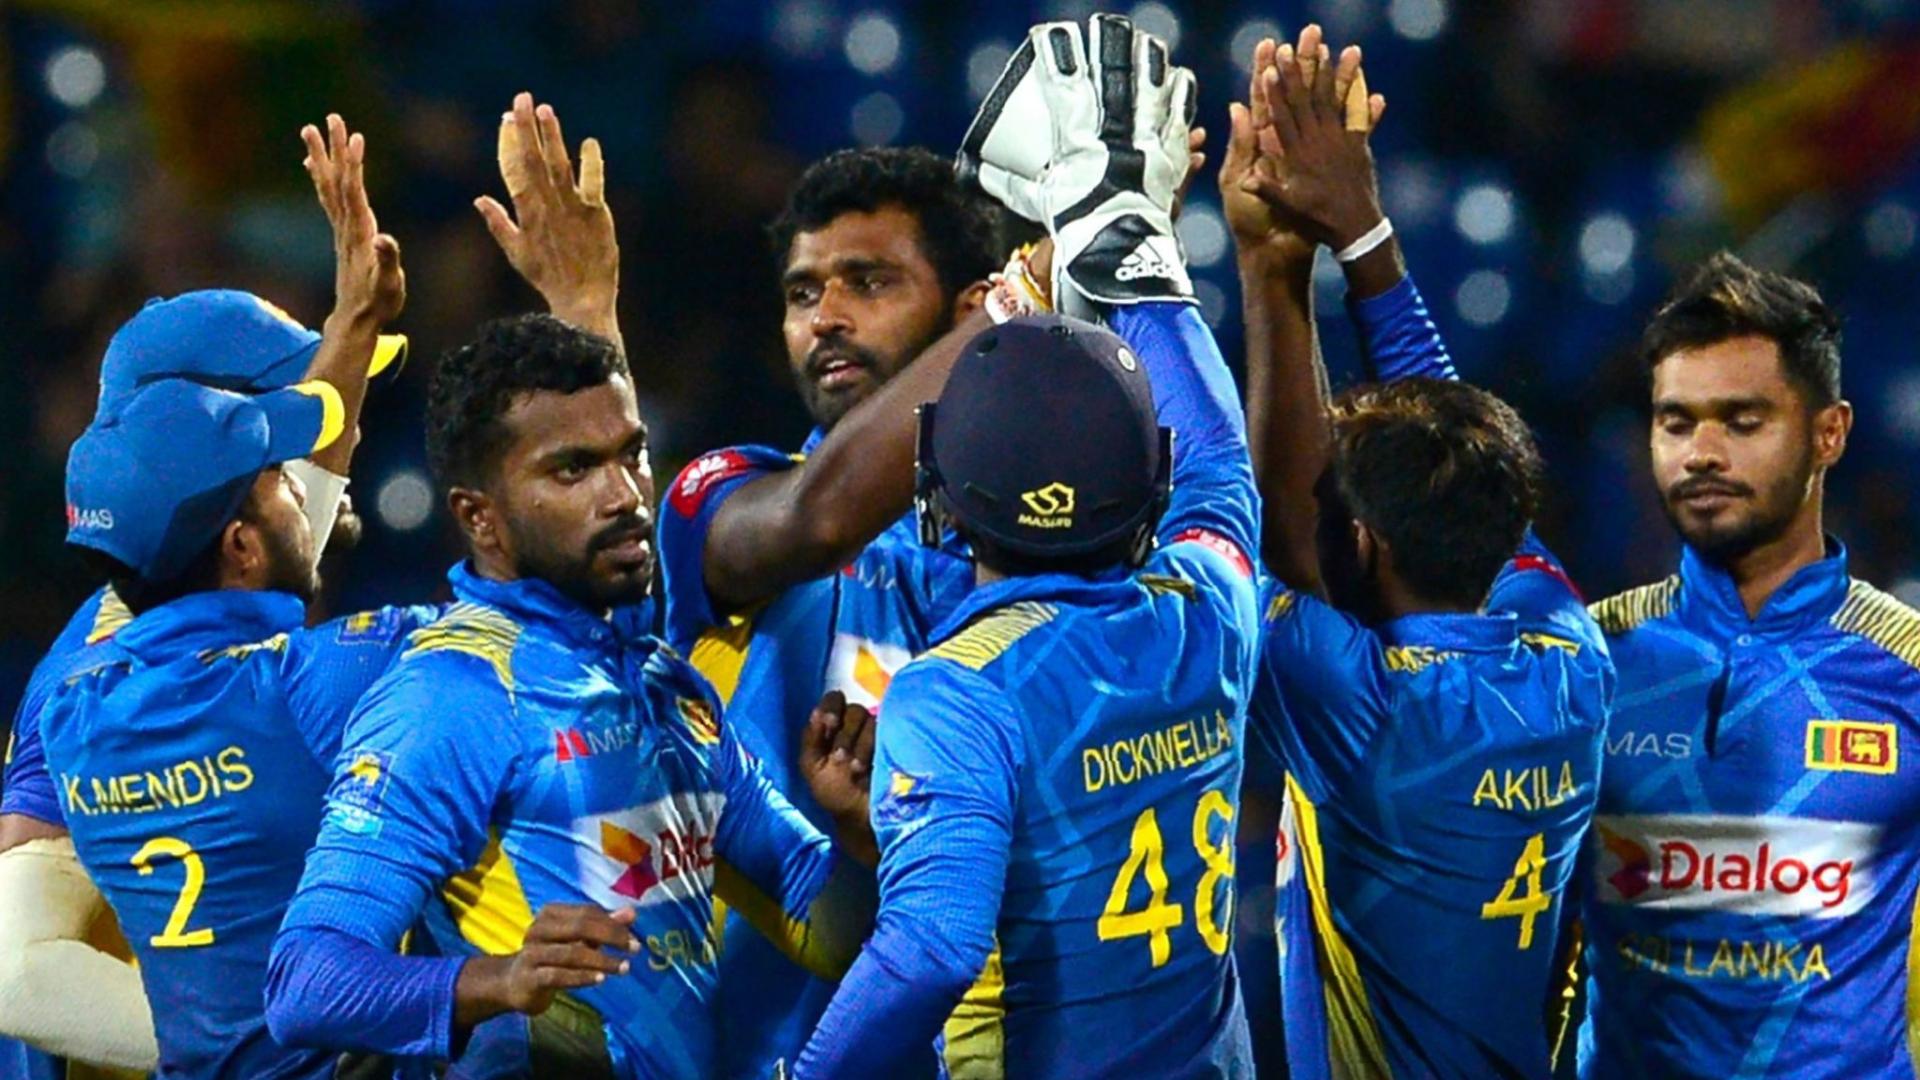 Sri Lanka Cricket in the Sky